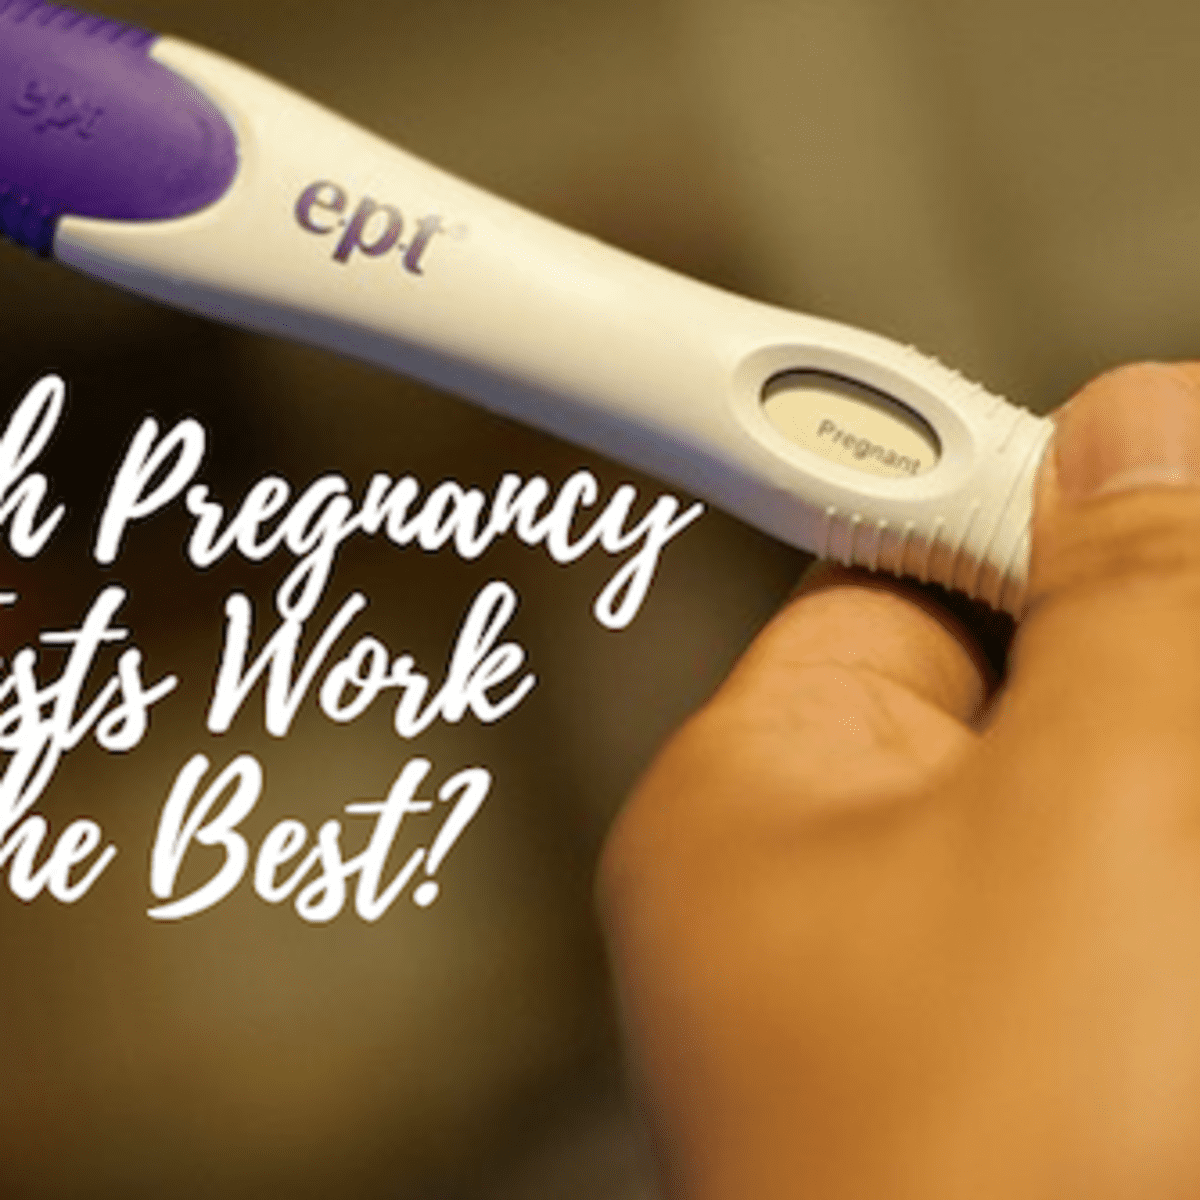 Test dip n tell pregnancy